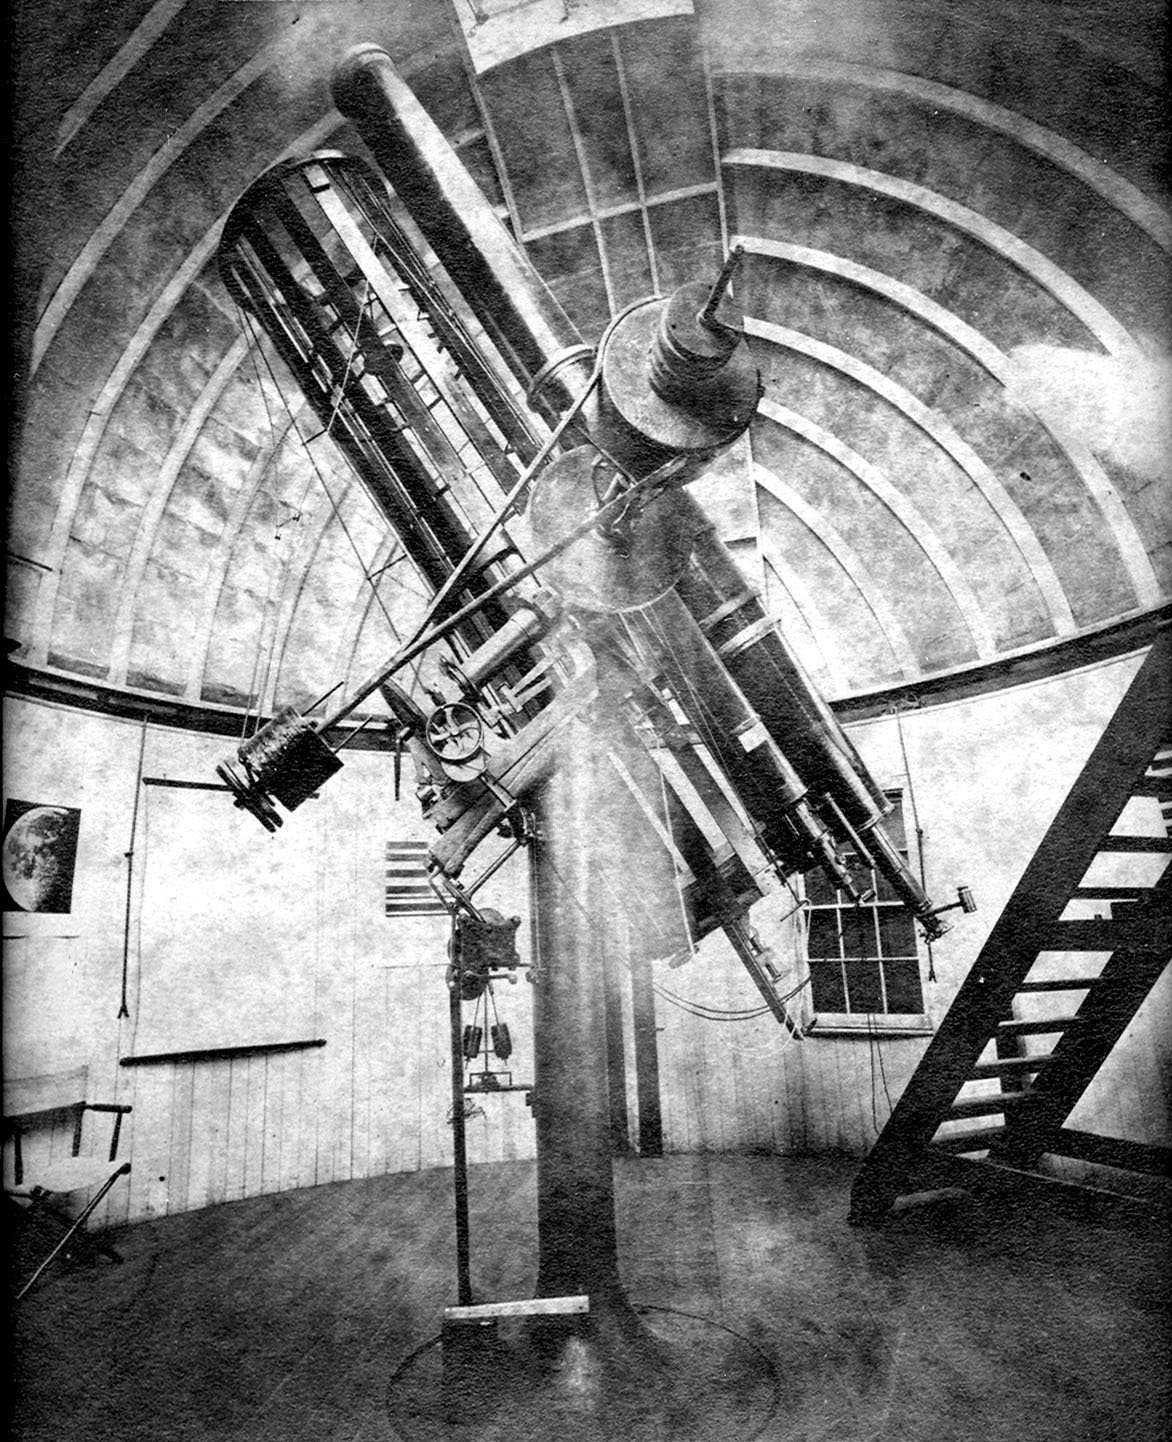 Henry Draper's telescope